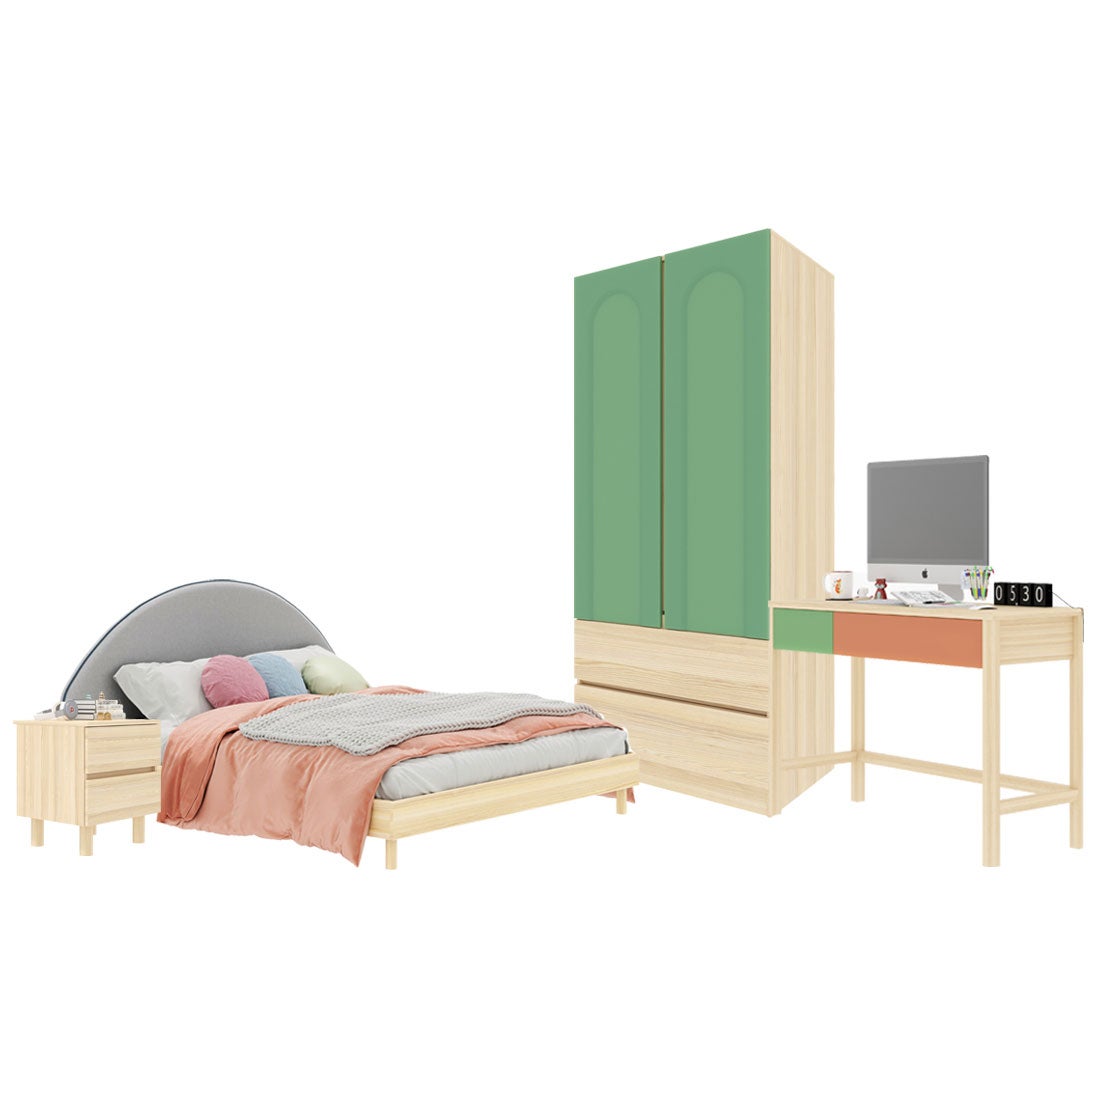 ชุดห้องนอน ขนาด 6 ฟุต-เบาะครีม รุ่น Bingsoo & ตู้เสื้อผ้าลิ้นชัก 90 ซม. พร้อมตู้ข้างเตียง สีเขียว01